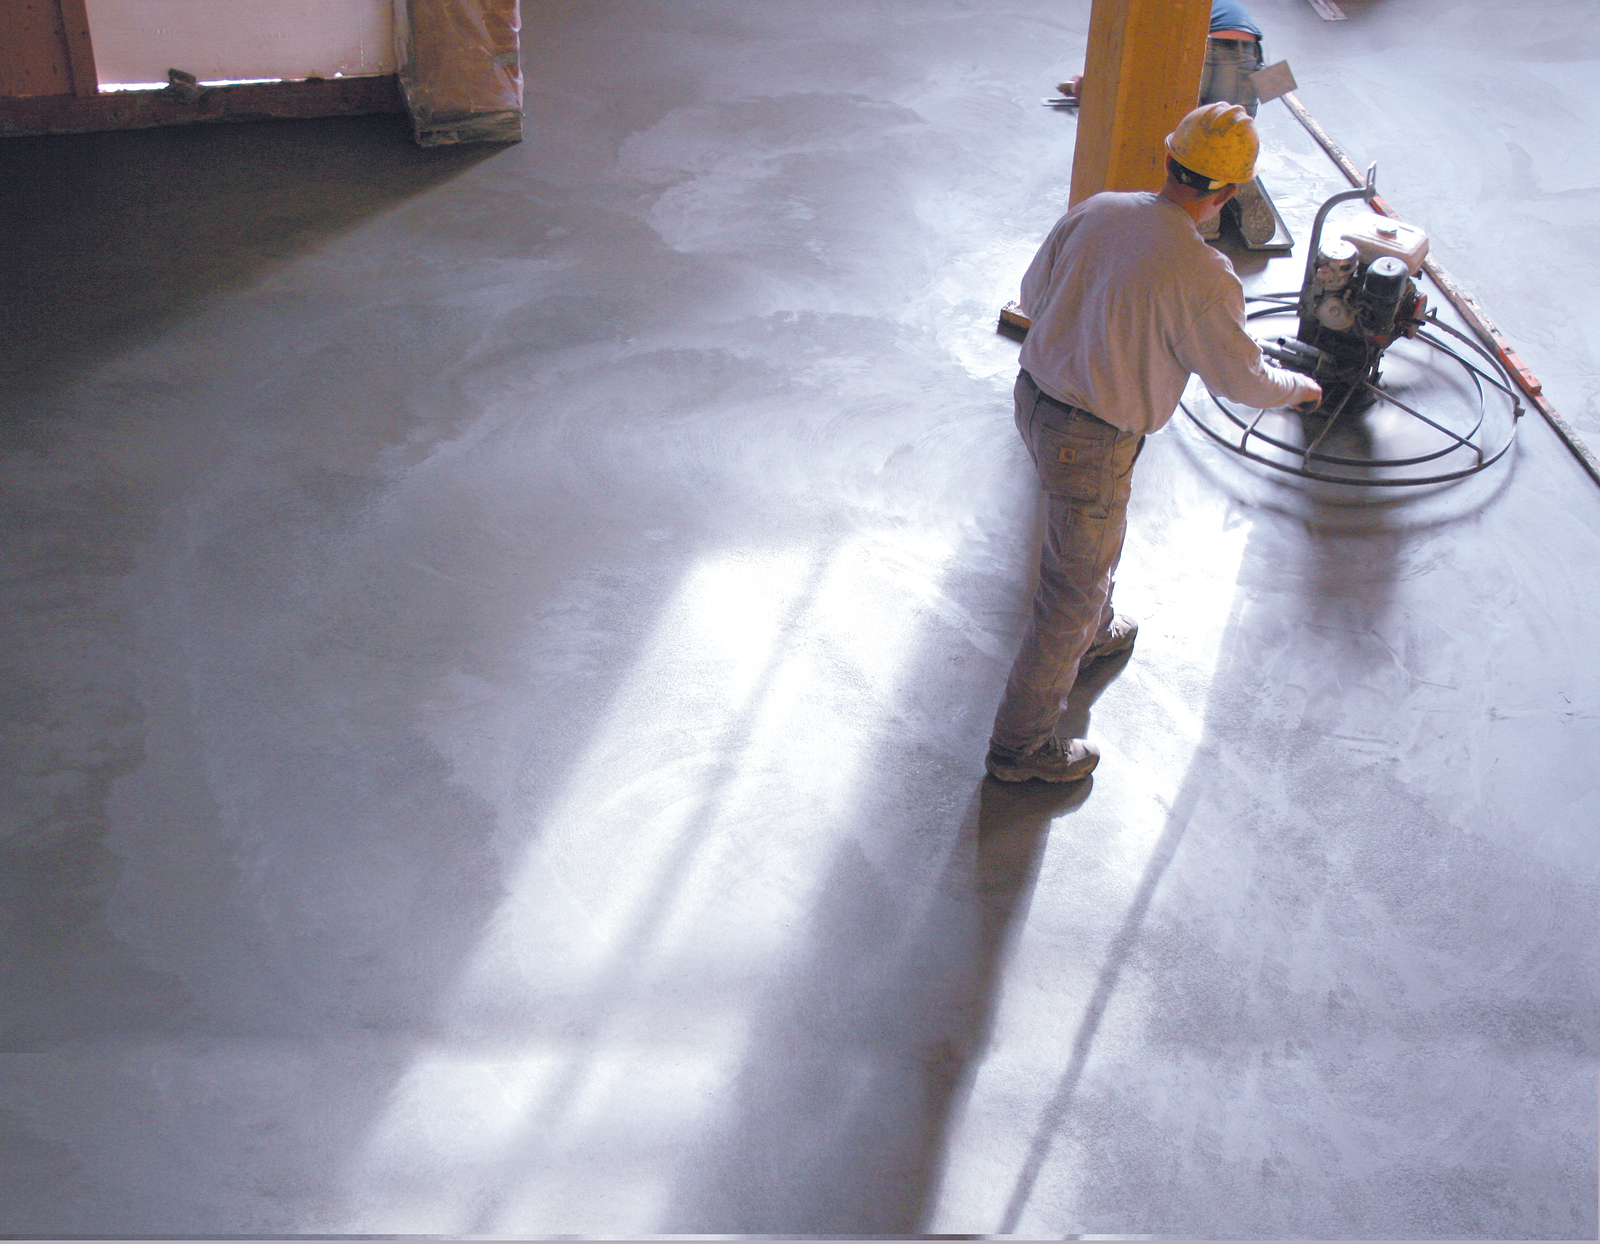 Шлифовка бетона производится при помощи бытовых или профессиональных устройств, ее рекомендуется осуществлять для придания напольному покрытию ровности и гладкости